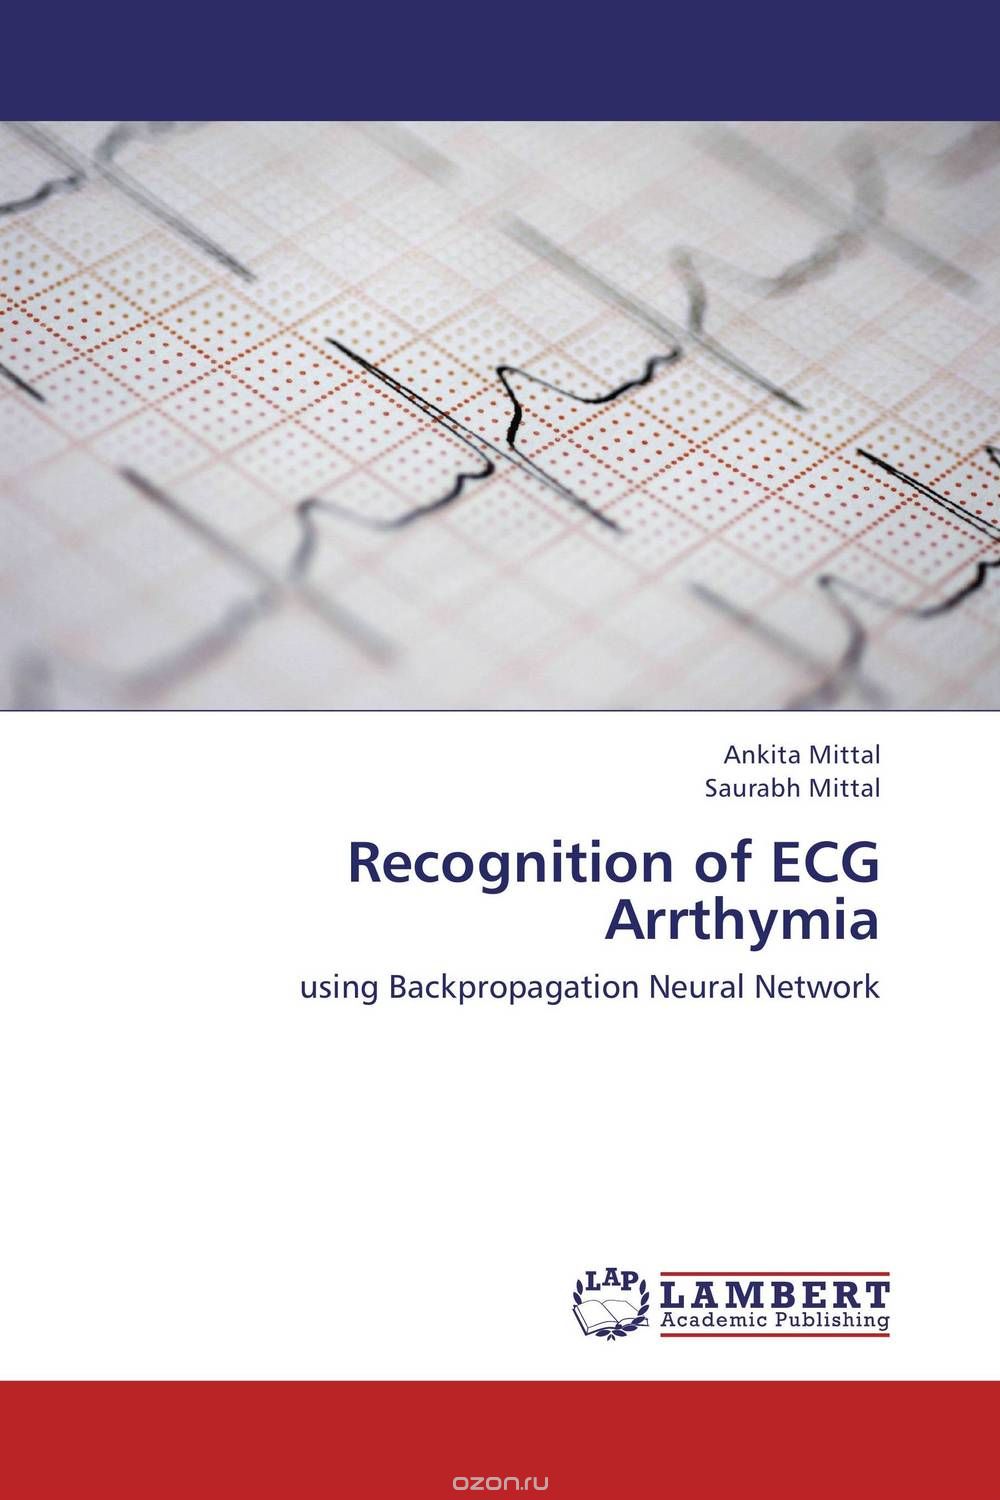 Скачать книгу "Recognition of ECG Arrthymia"